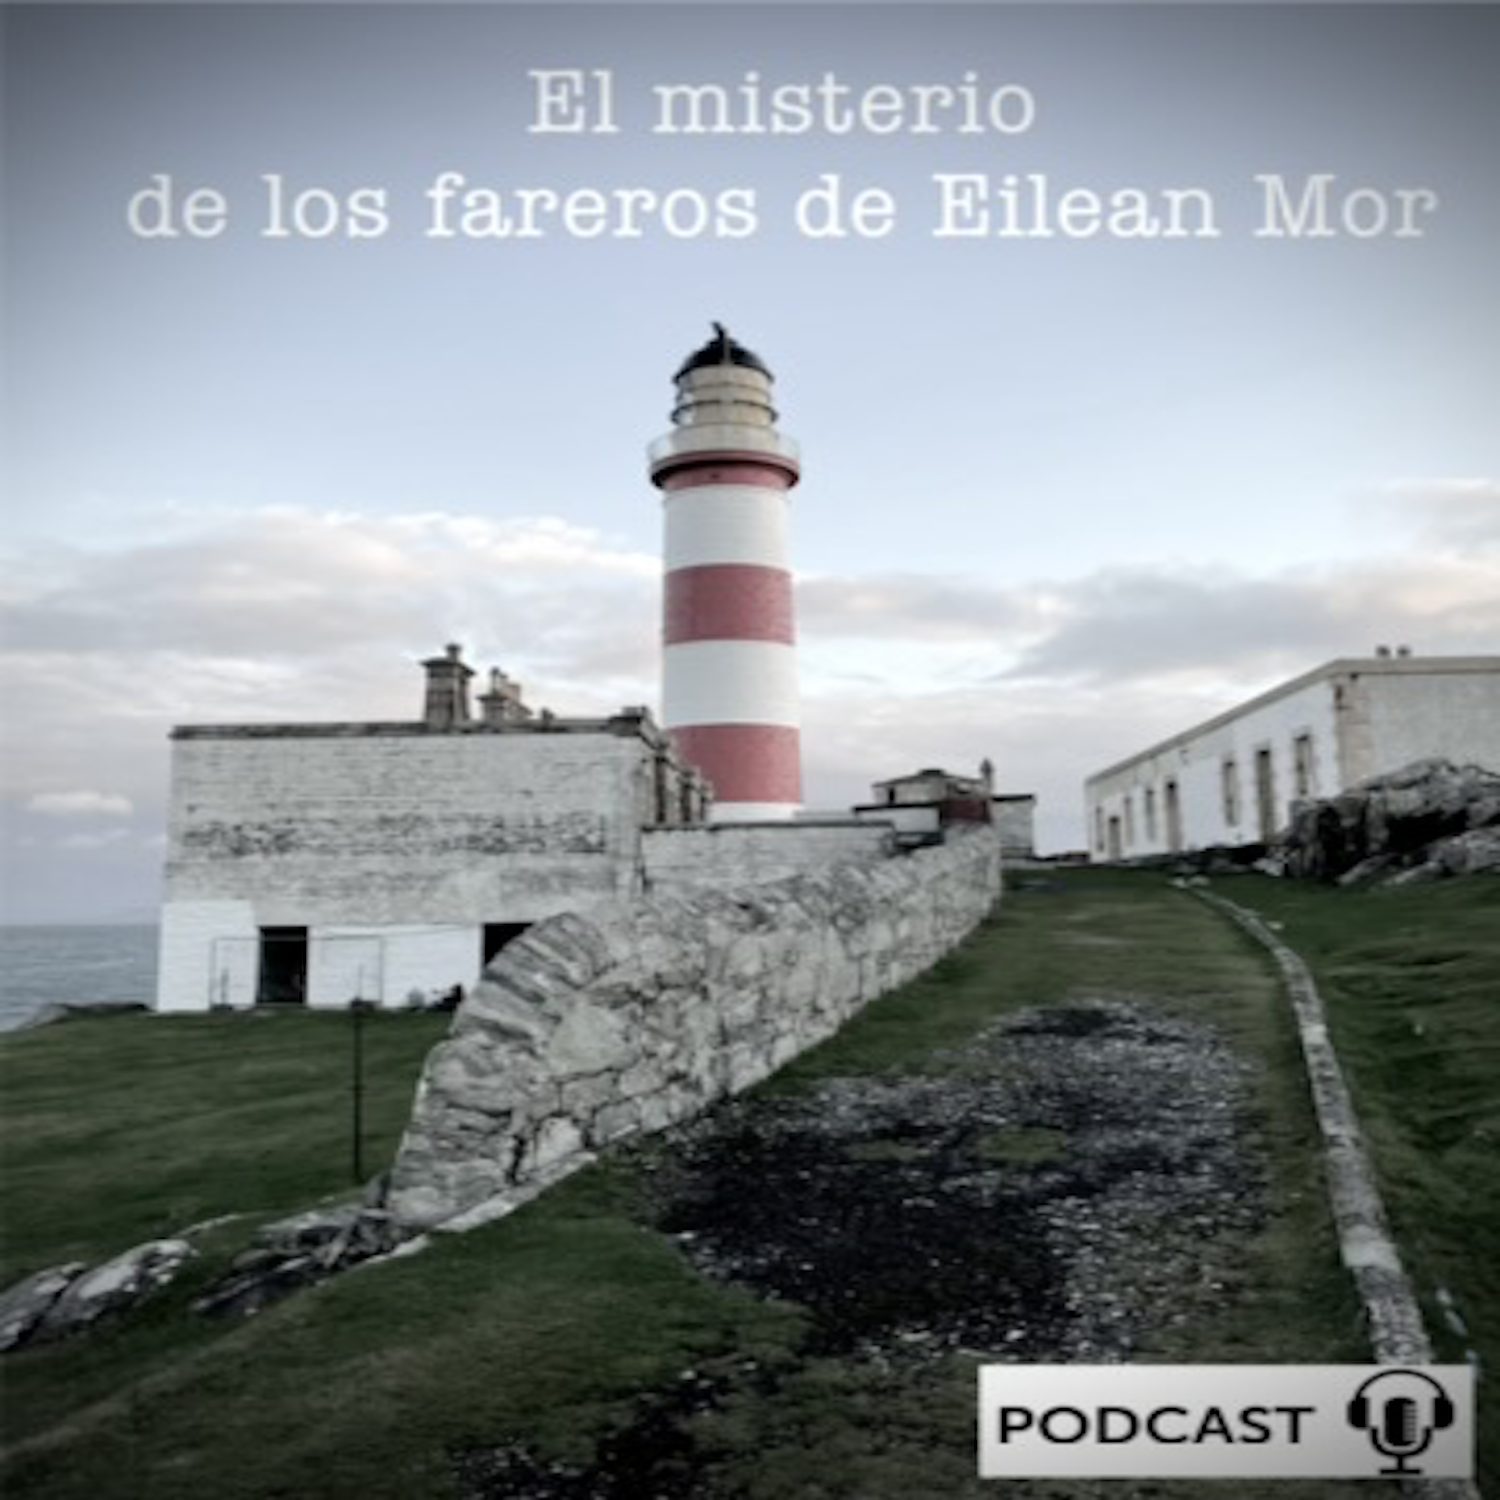 El misterio de los fareros de Eilean Mor